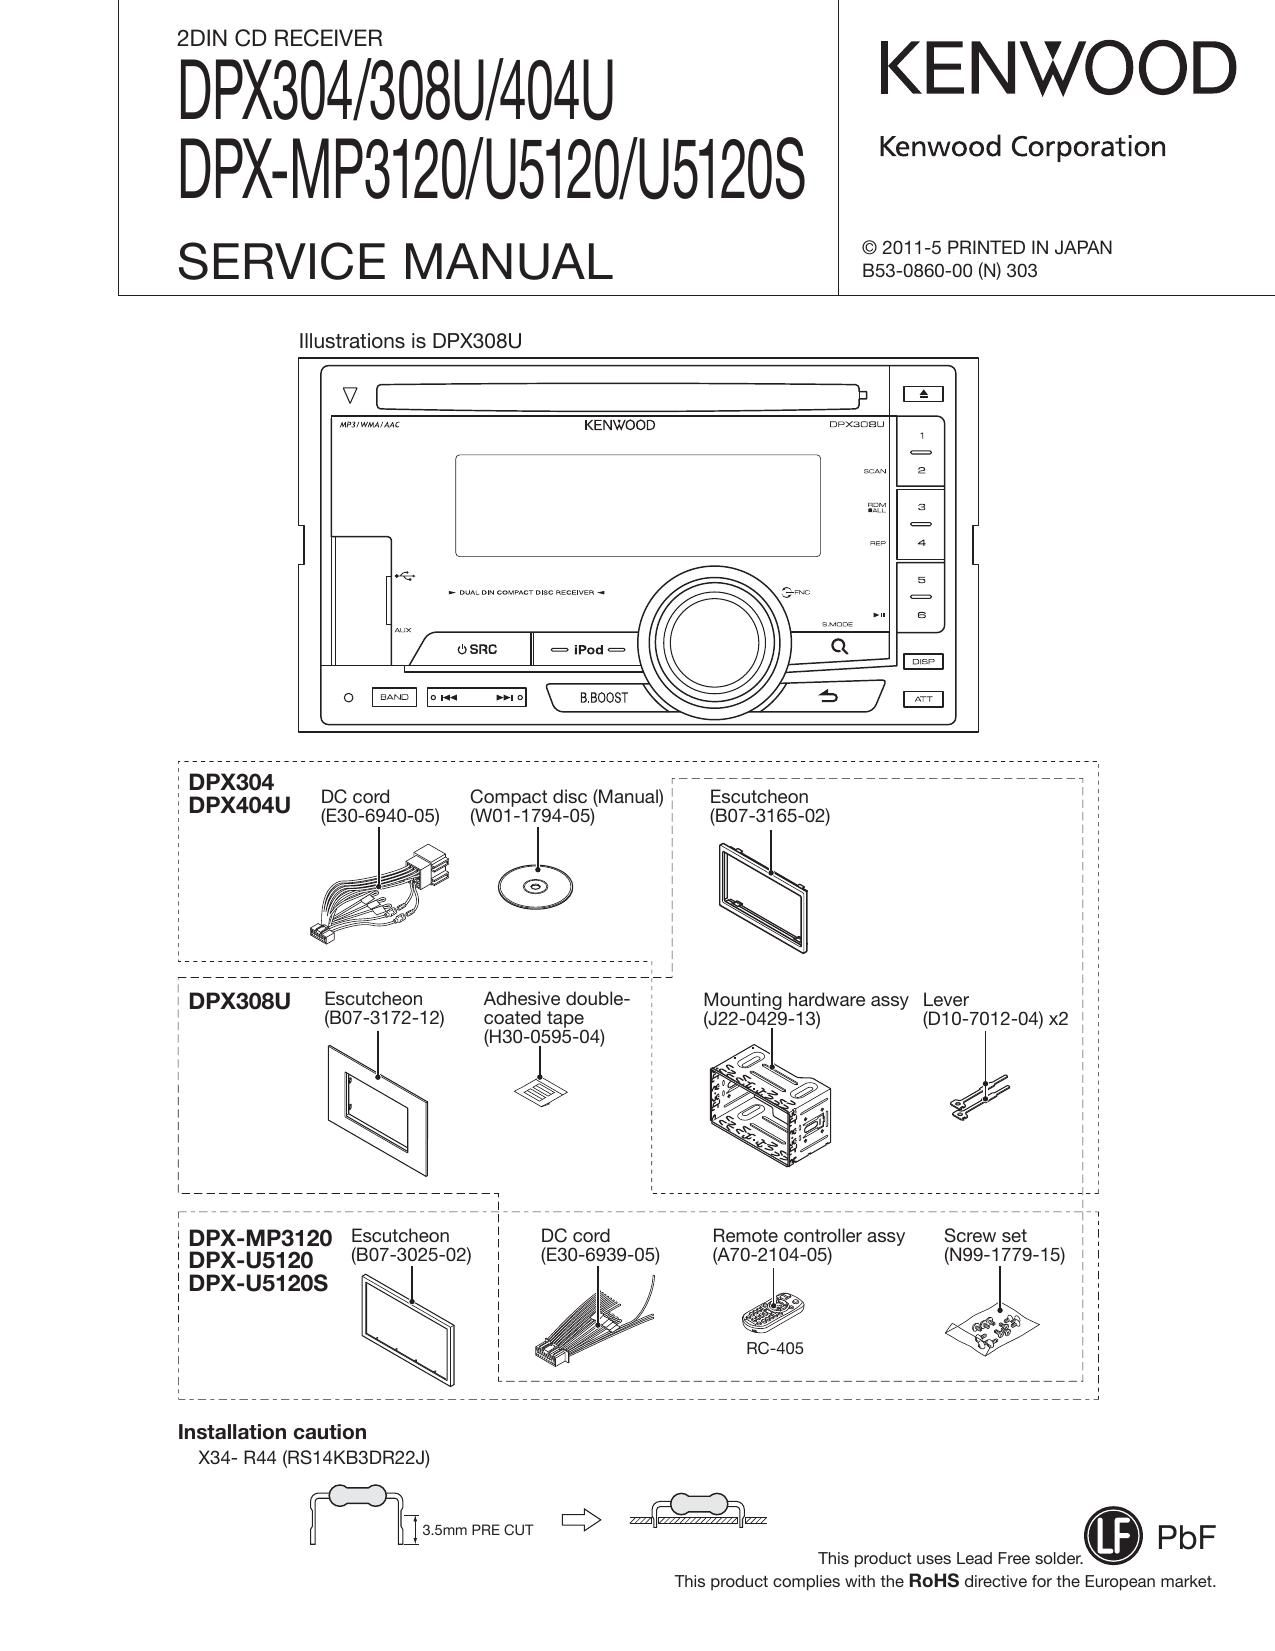 Kenwood DPXU 5120 Service Manual